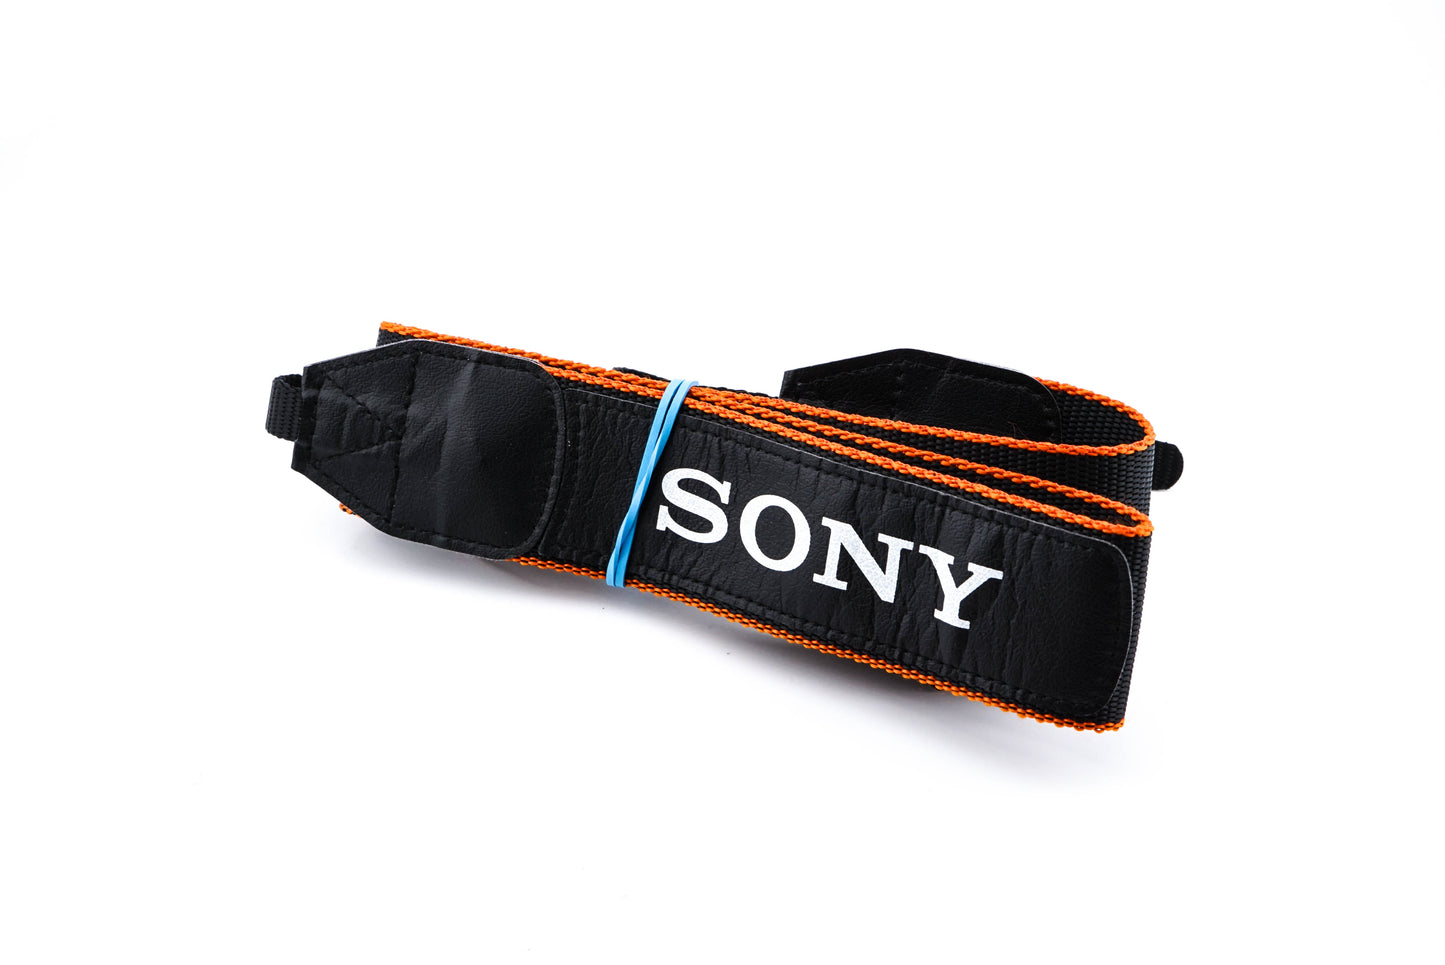 Sony SLR Strap